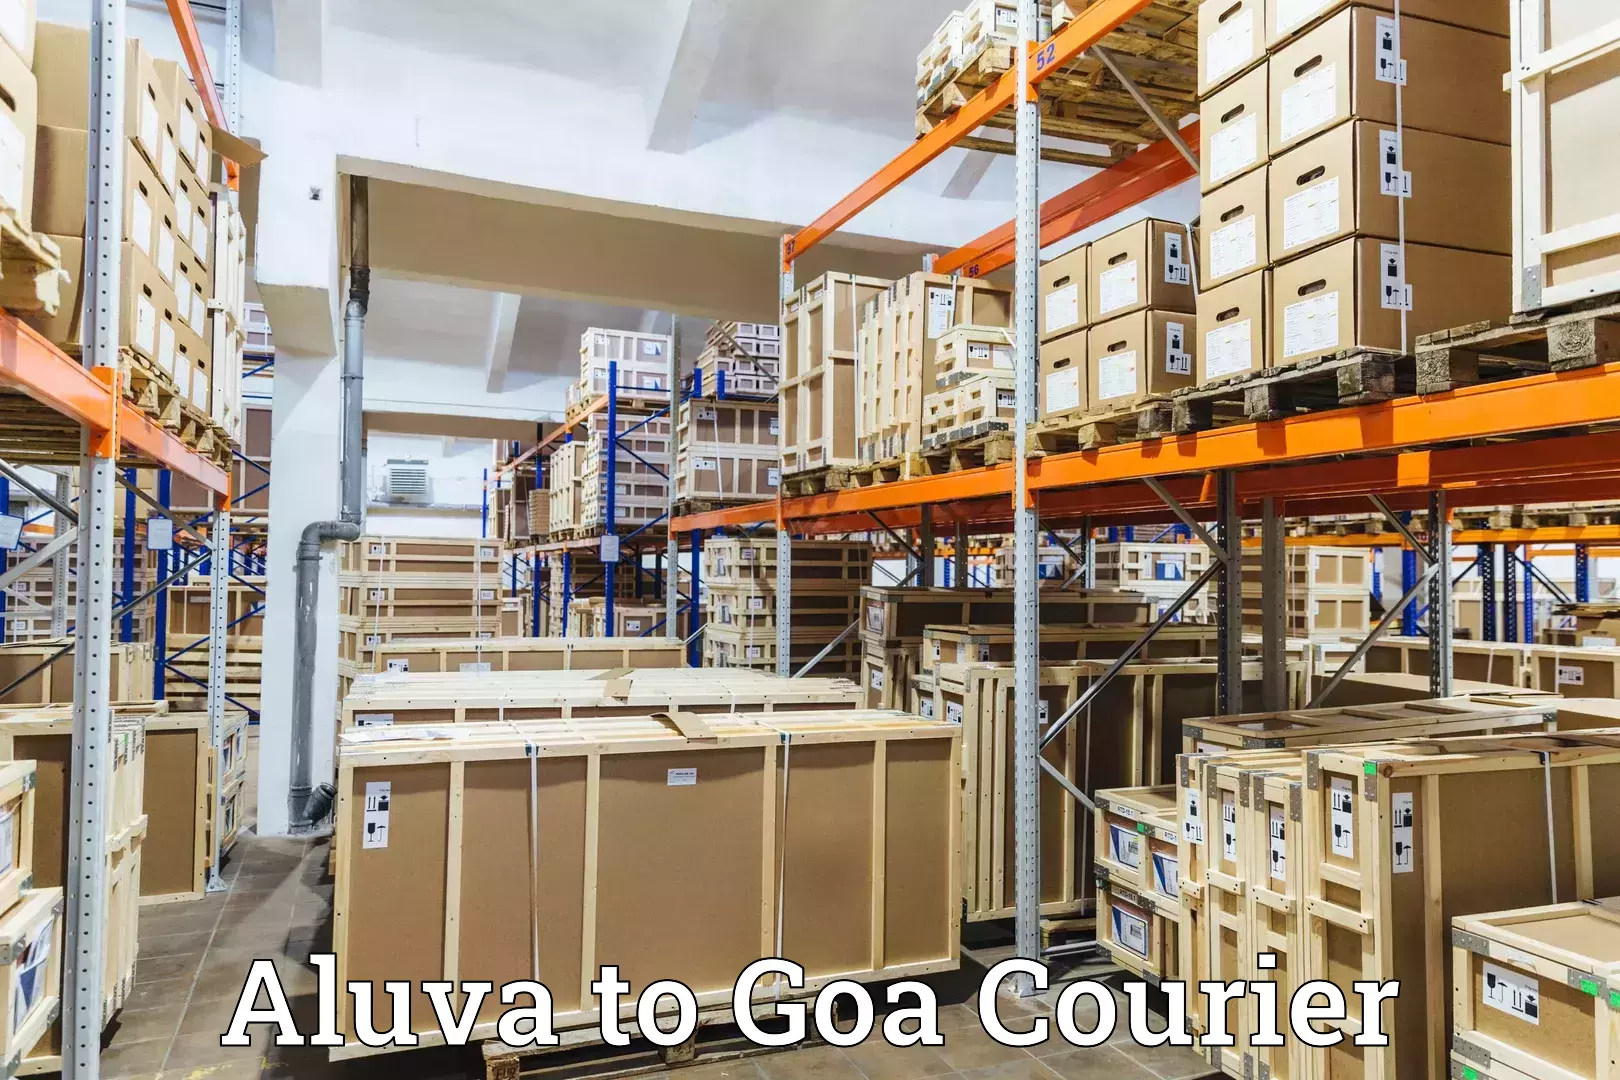 24-hour courier service Aluva to Vasco da Gama